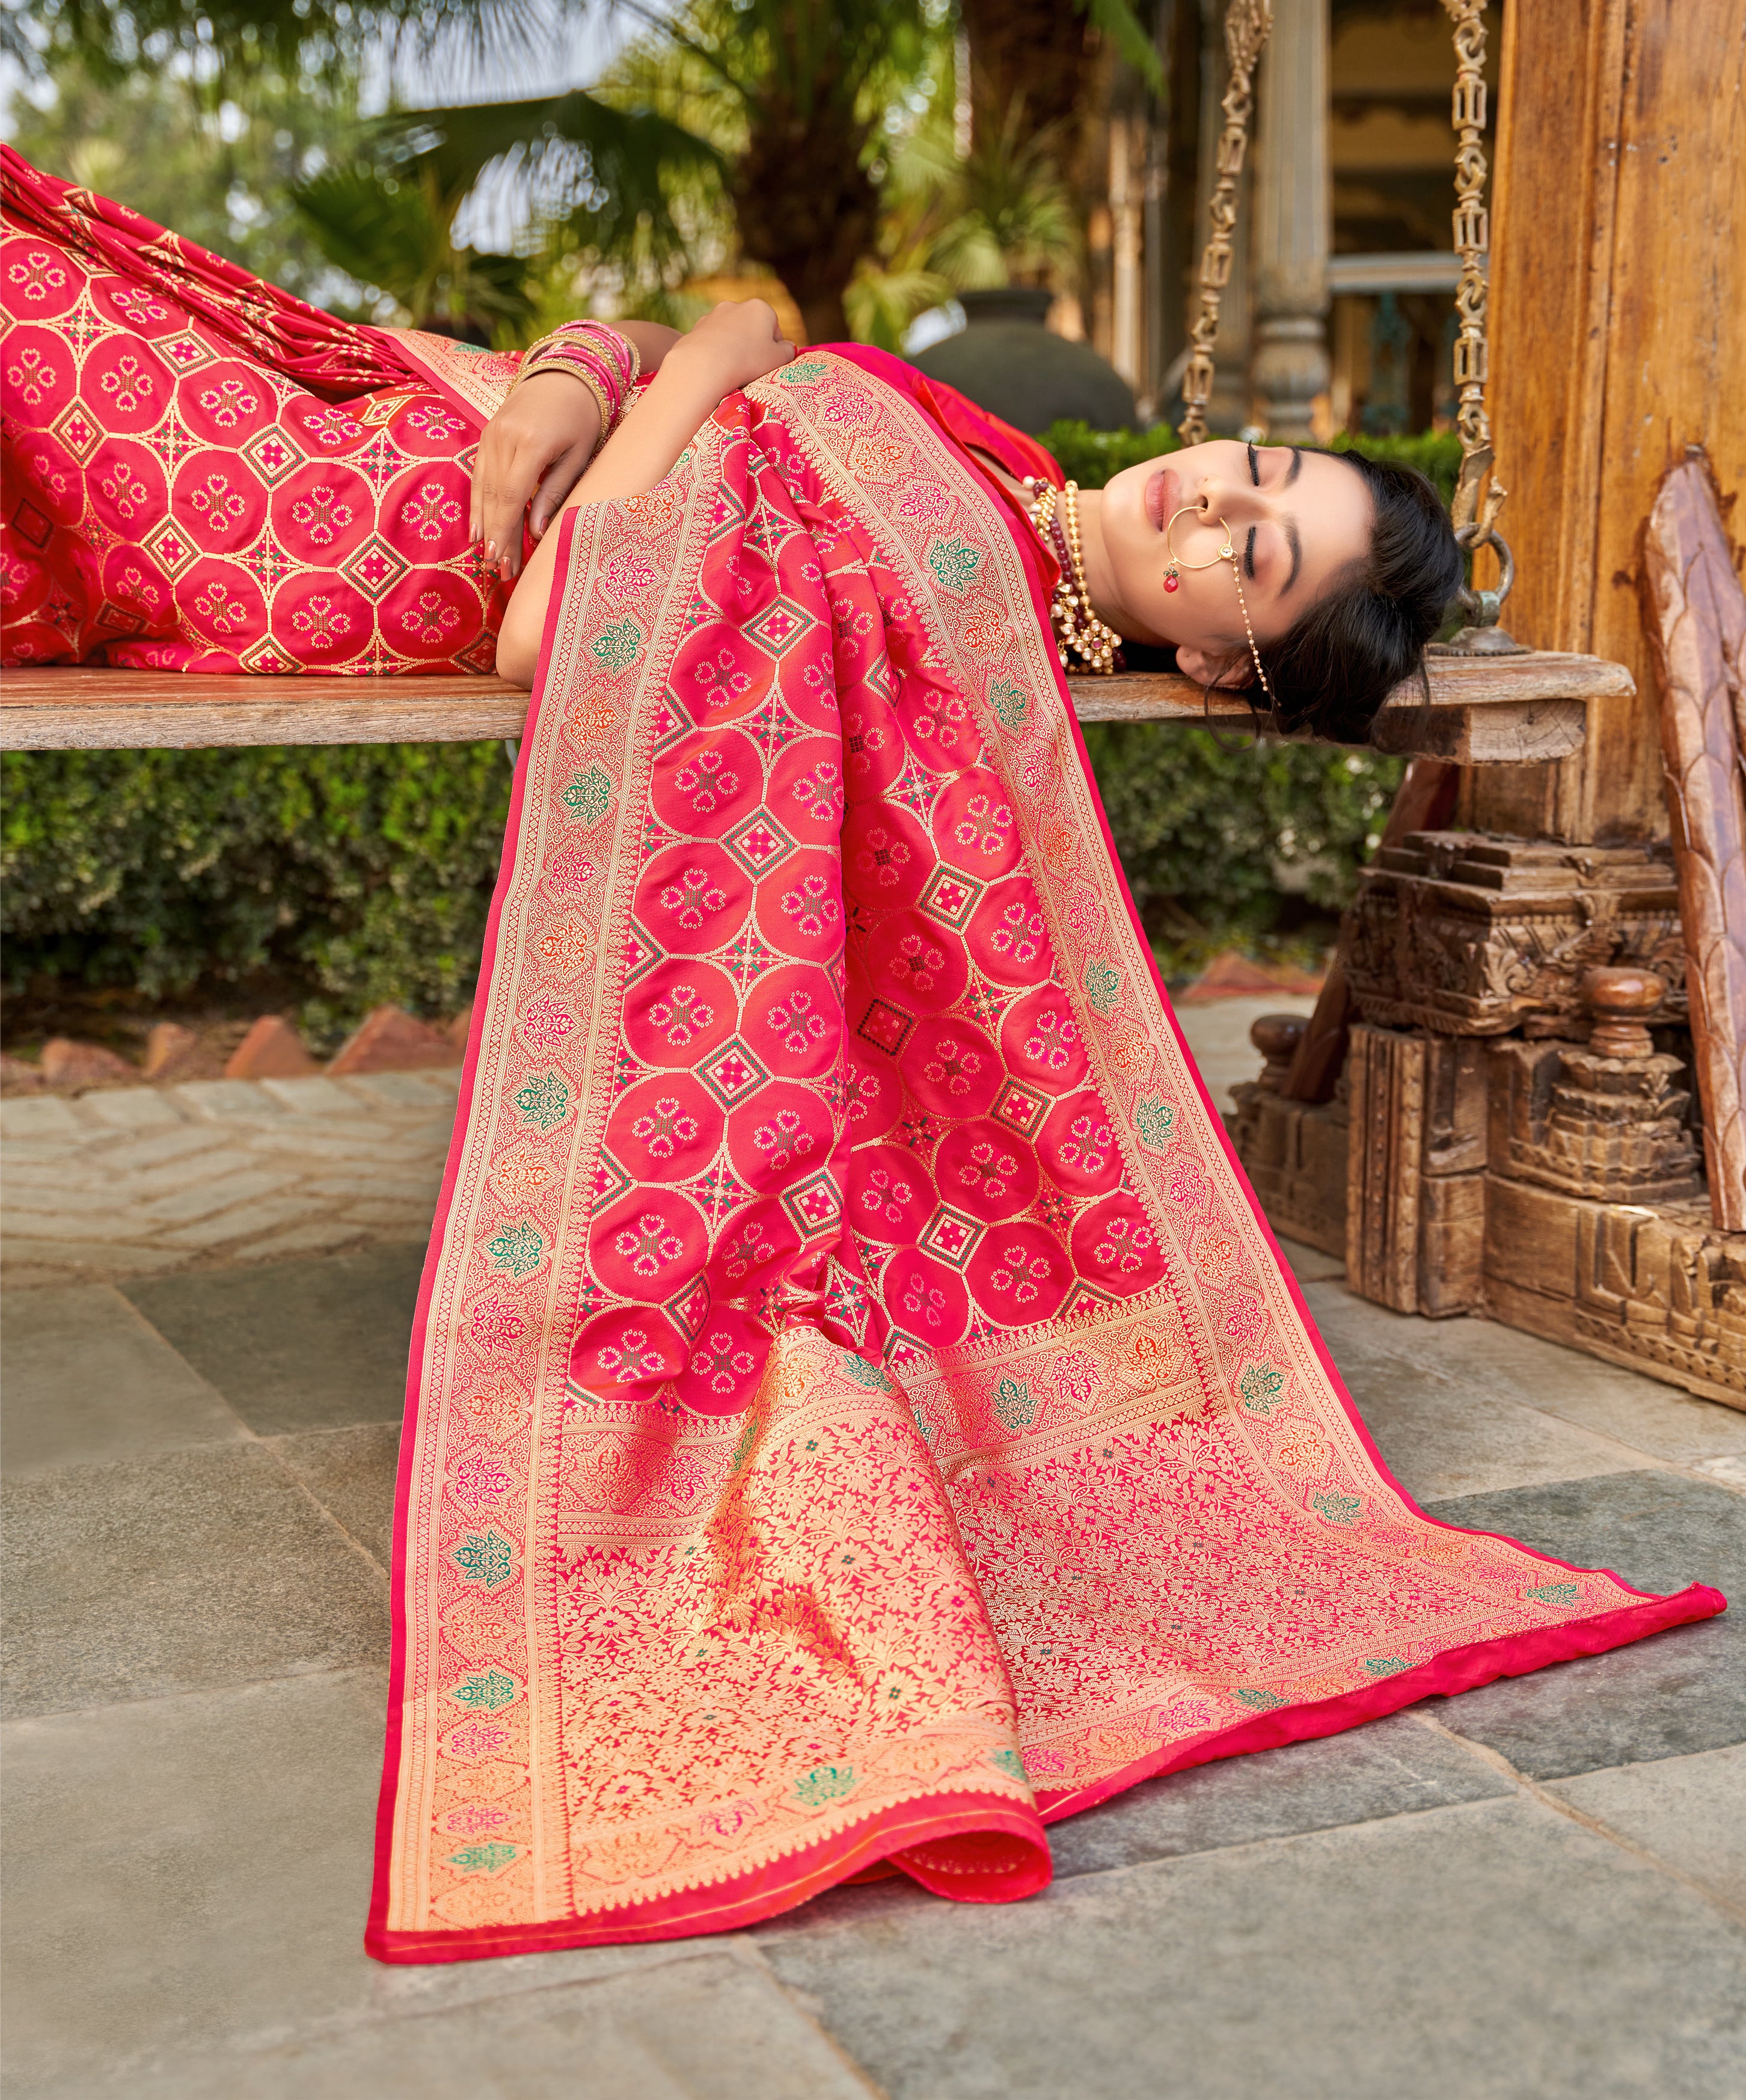 Women's Red Weaving Banarasi Silk Designer Traditional Saree - Monjolika